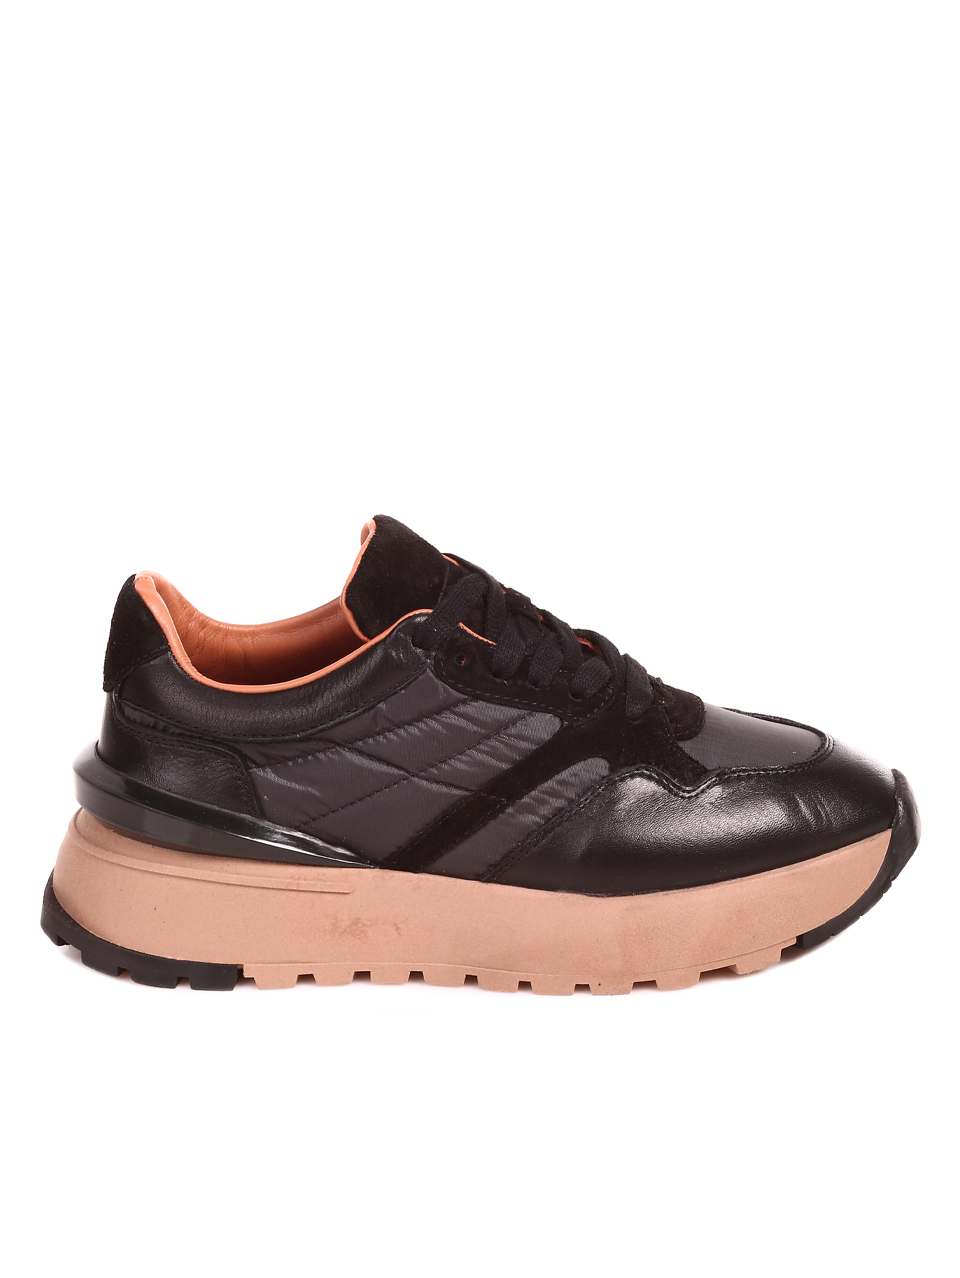 Ежедневни дамски комфортни обувки от естествена кожа в черно 3AT-22752 black